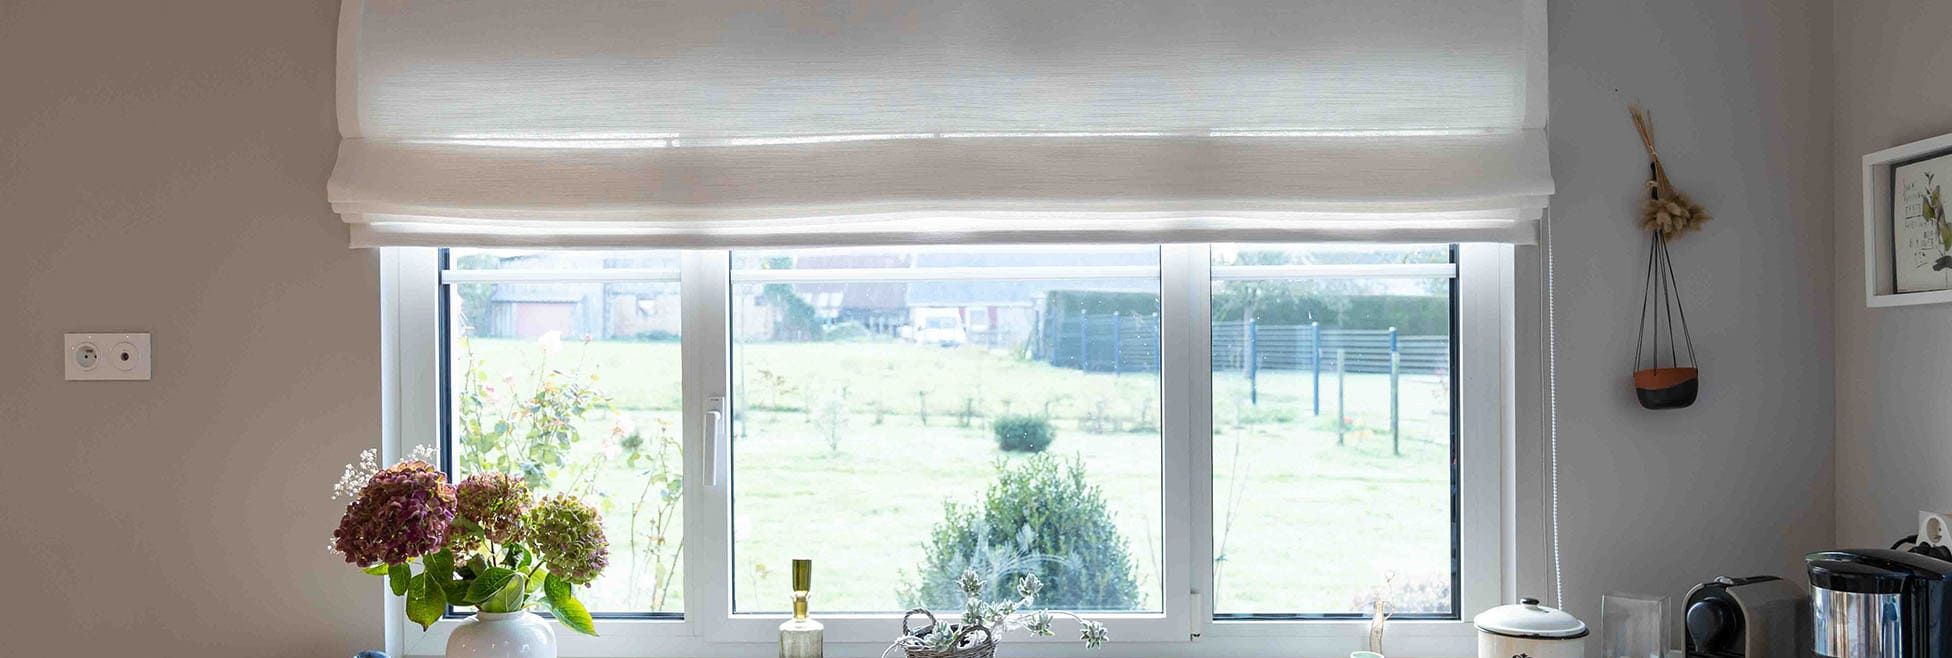 Cuisine de décorateur d'intérieur avec une fenêtre et une vue sur un jardin